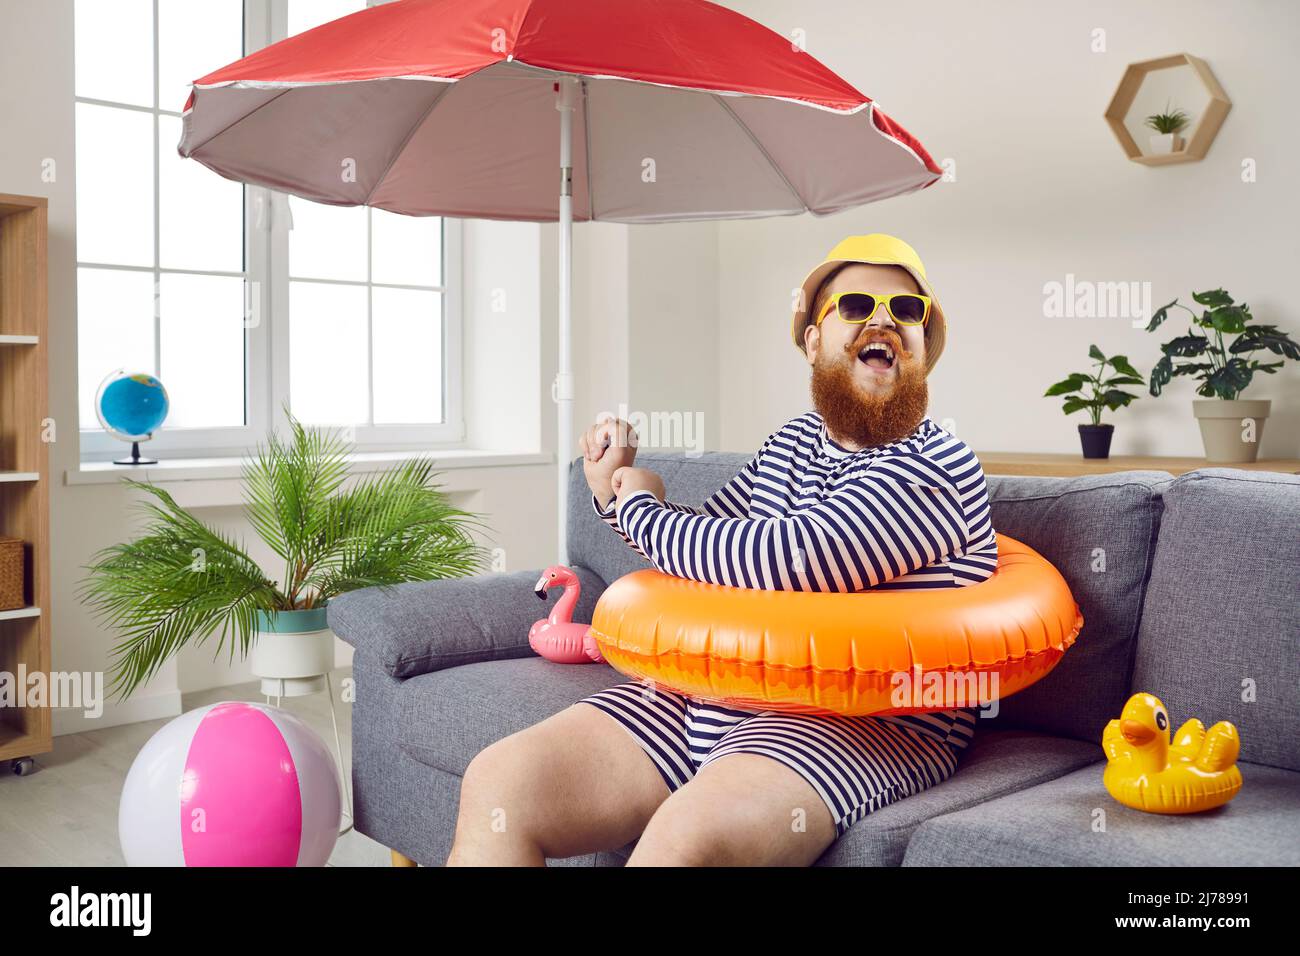 Drôle de chubby homme ayant l'amusement assis sur le canapé dans le salon avec le cercle gonflable de natation. Banque D'Images